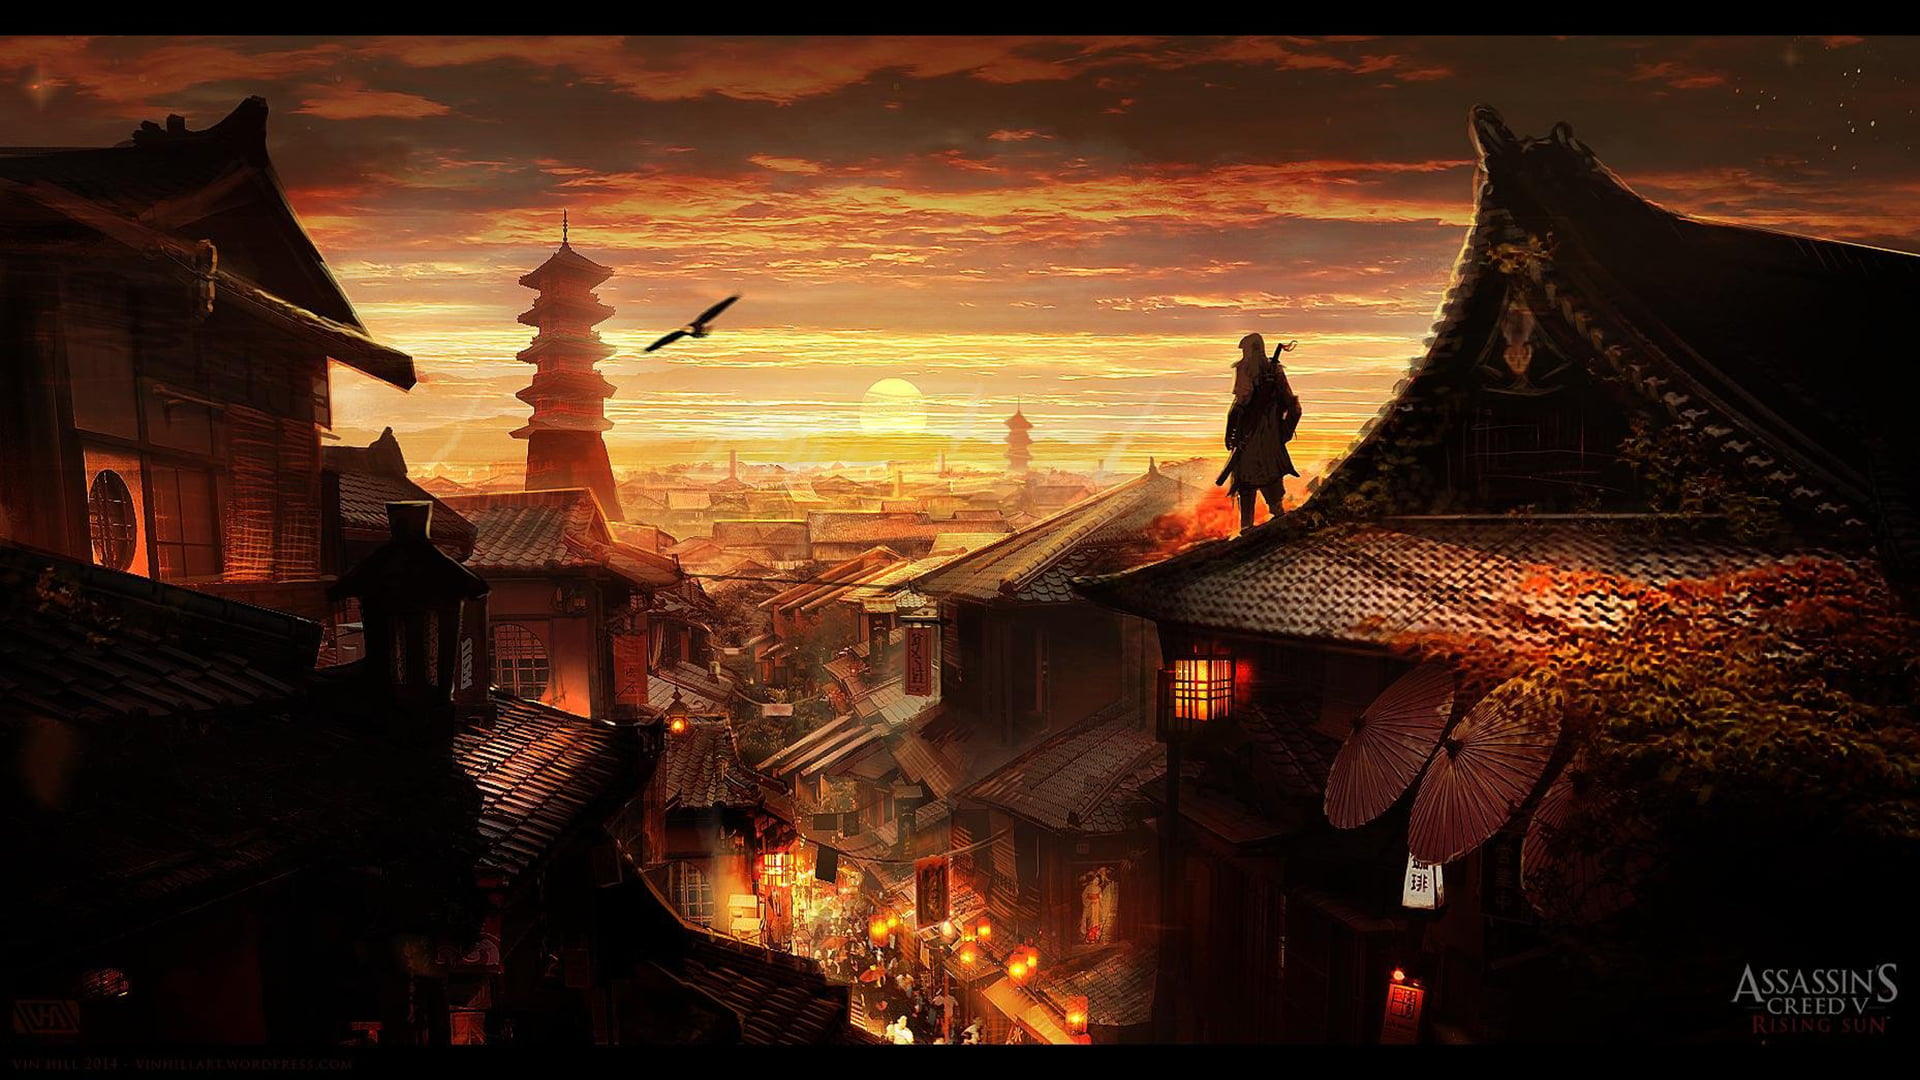 Assassins Creed digital wallpaper, Assassin's Creed, fantasy art